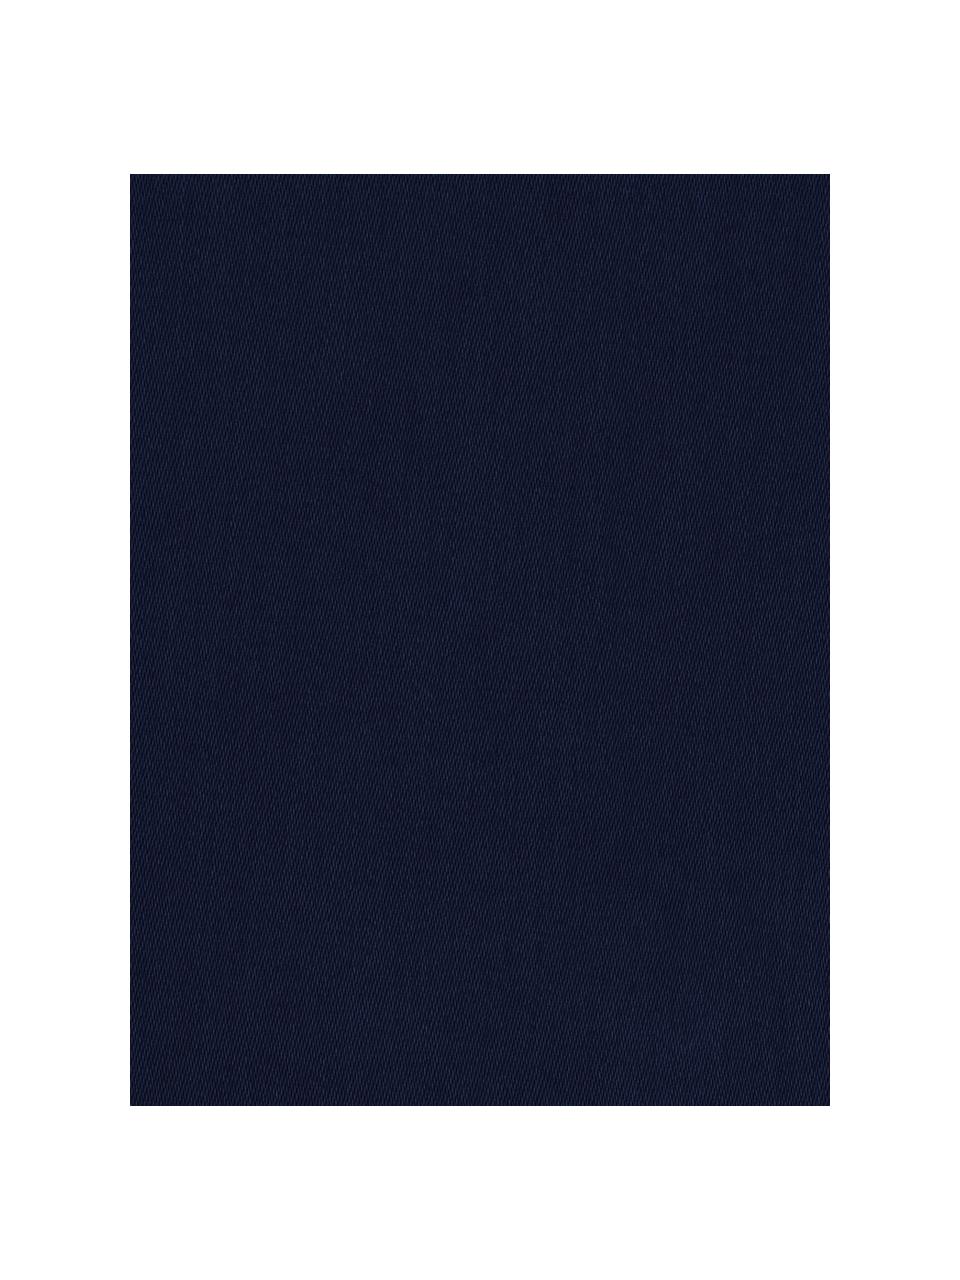 Poszewka na poduszkę z satyny bawełnianej Comfort, 2 szt., Ciemny niebieski, S 40 x D 80 cm